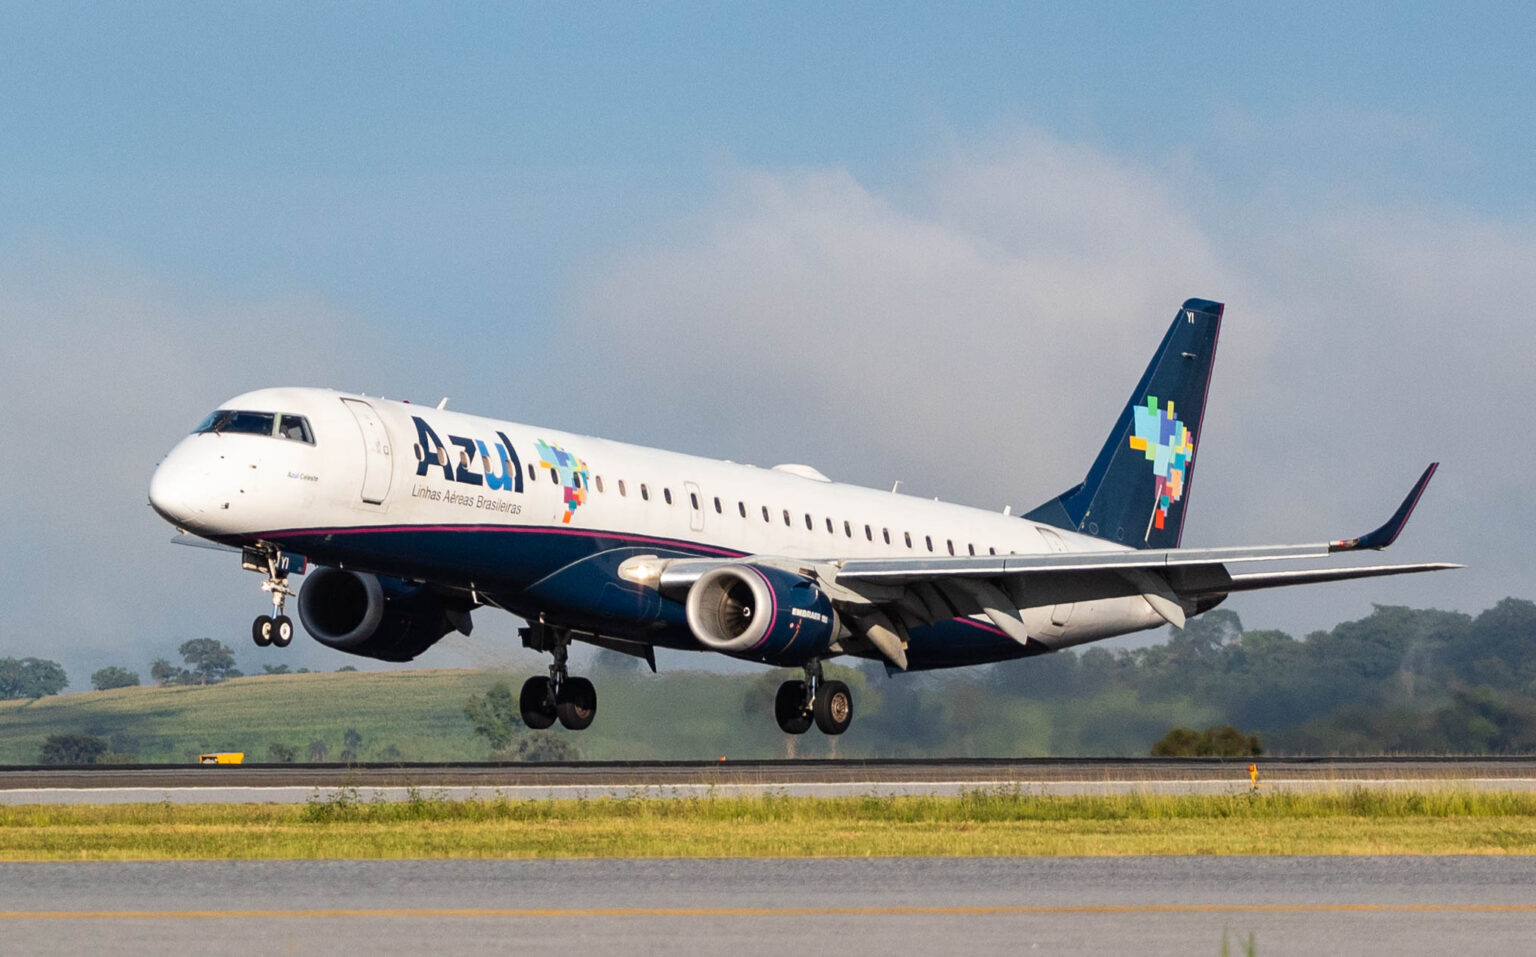 PR-AYI - Embraer 195 - Azul Linhas Aéreas